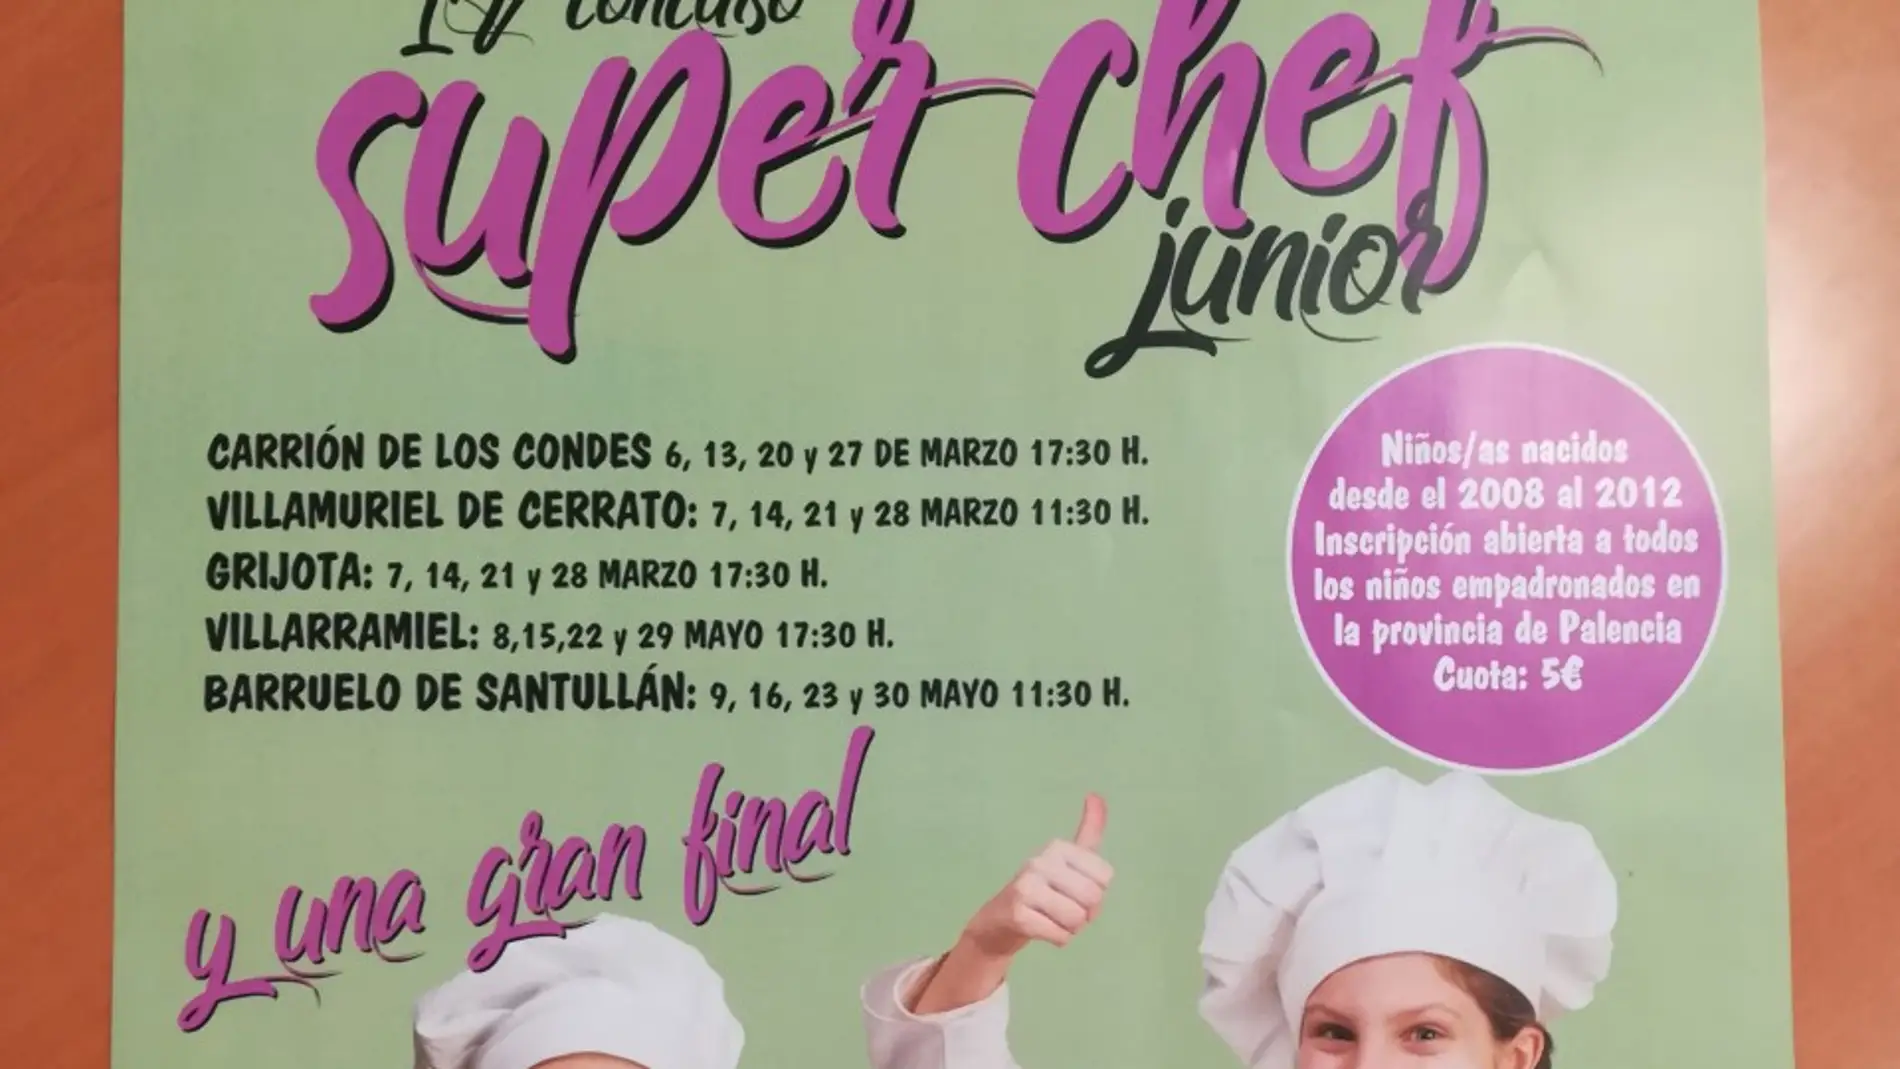 Carrión, Villamuriel, Grijota, Villarramiel y Barruelo acogen "Super Chef Junior"